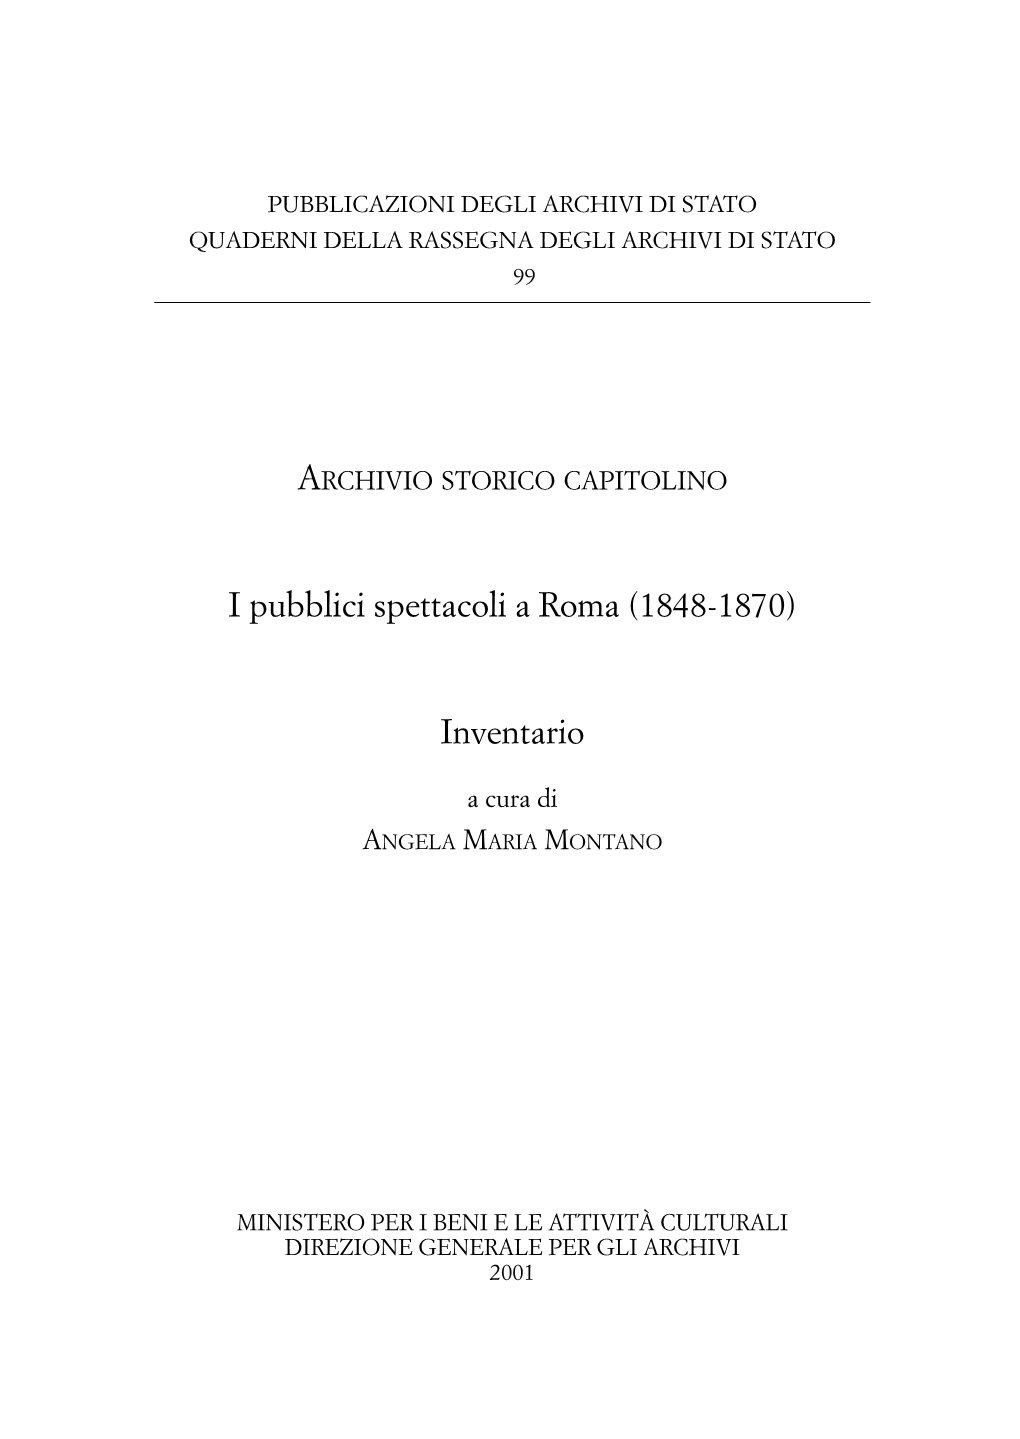 I Pubblici Spettacoli a Roma (1848-1870)